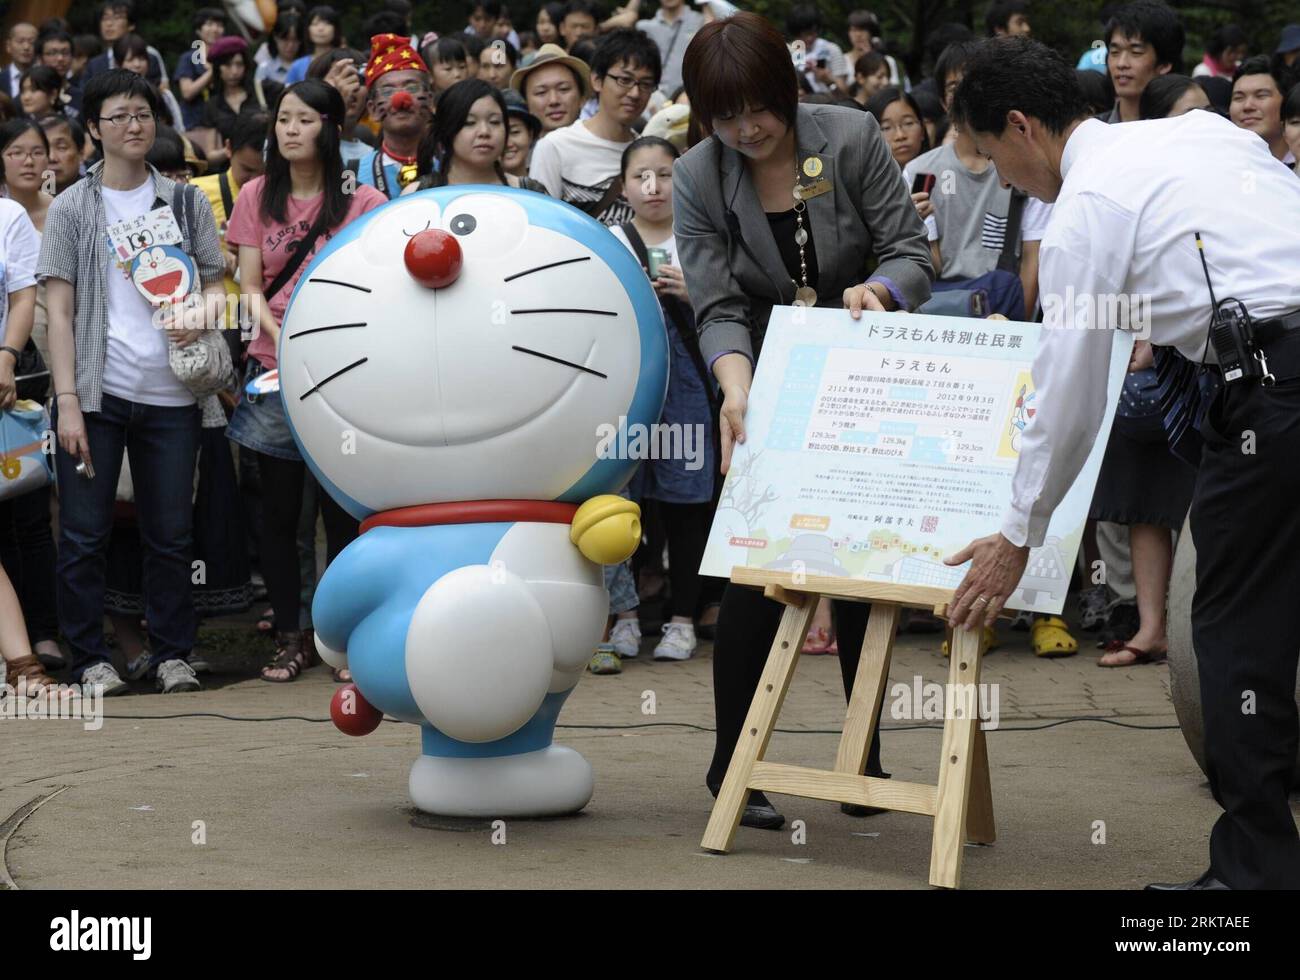 Bildnummer: 58423630 Datum: 03.09.2012 Copyright: imago/Xinhua (120903) -- KAWASAKI, 3. September 2012 (Xinhua) -- Arbeiter zeigen Doraemon während einer Feier am 100. September vor Doraemons Geburt im Fujiko F. Fujio Museum in Kawasaki, Japan, 3. September 2012 die besondere Wohnbescheinigung von Kawasaki. Doraemon ist eine japanische Zeichentrickfigur, die von Fujikon F. Fujio geschaffen wurde. Doraemon wurde am 3. September 2112 geboren. (Xinhua/Kenichiro Seki) (psw) JAPAN-KAWASAKI-DORAEMON-CELEBRATION PUBLICATIONxNOTxINxCHN Entertainment Kultur Popkultur Comic Comicfigur Jubiläum Feier Obje Stockfoto